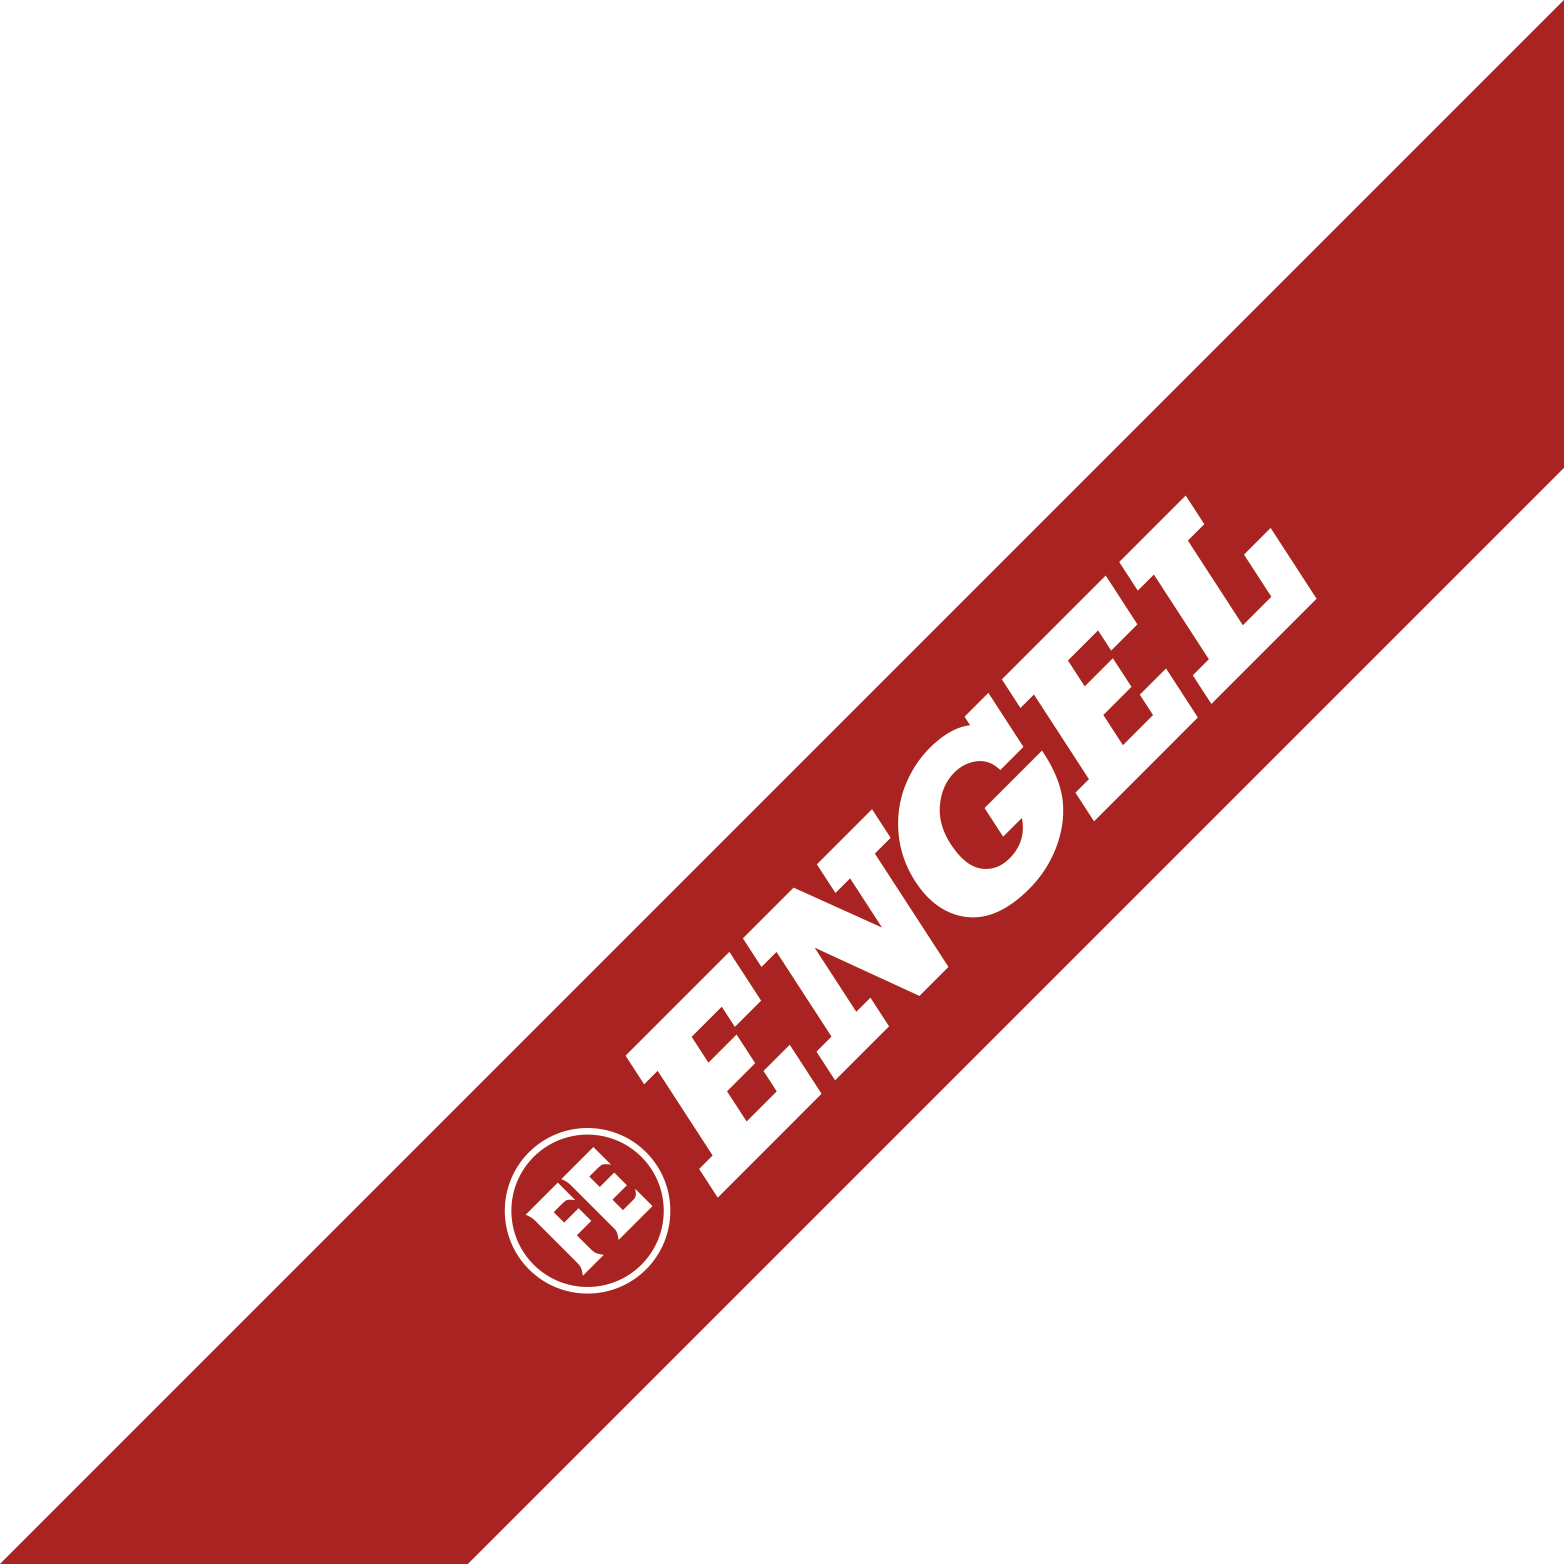 FE Engel Workwear